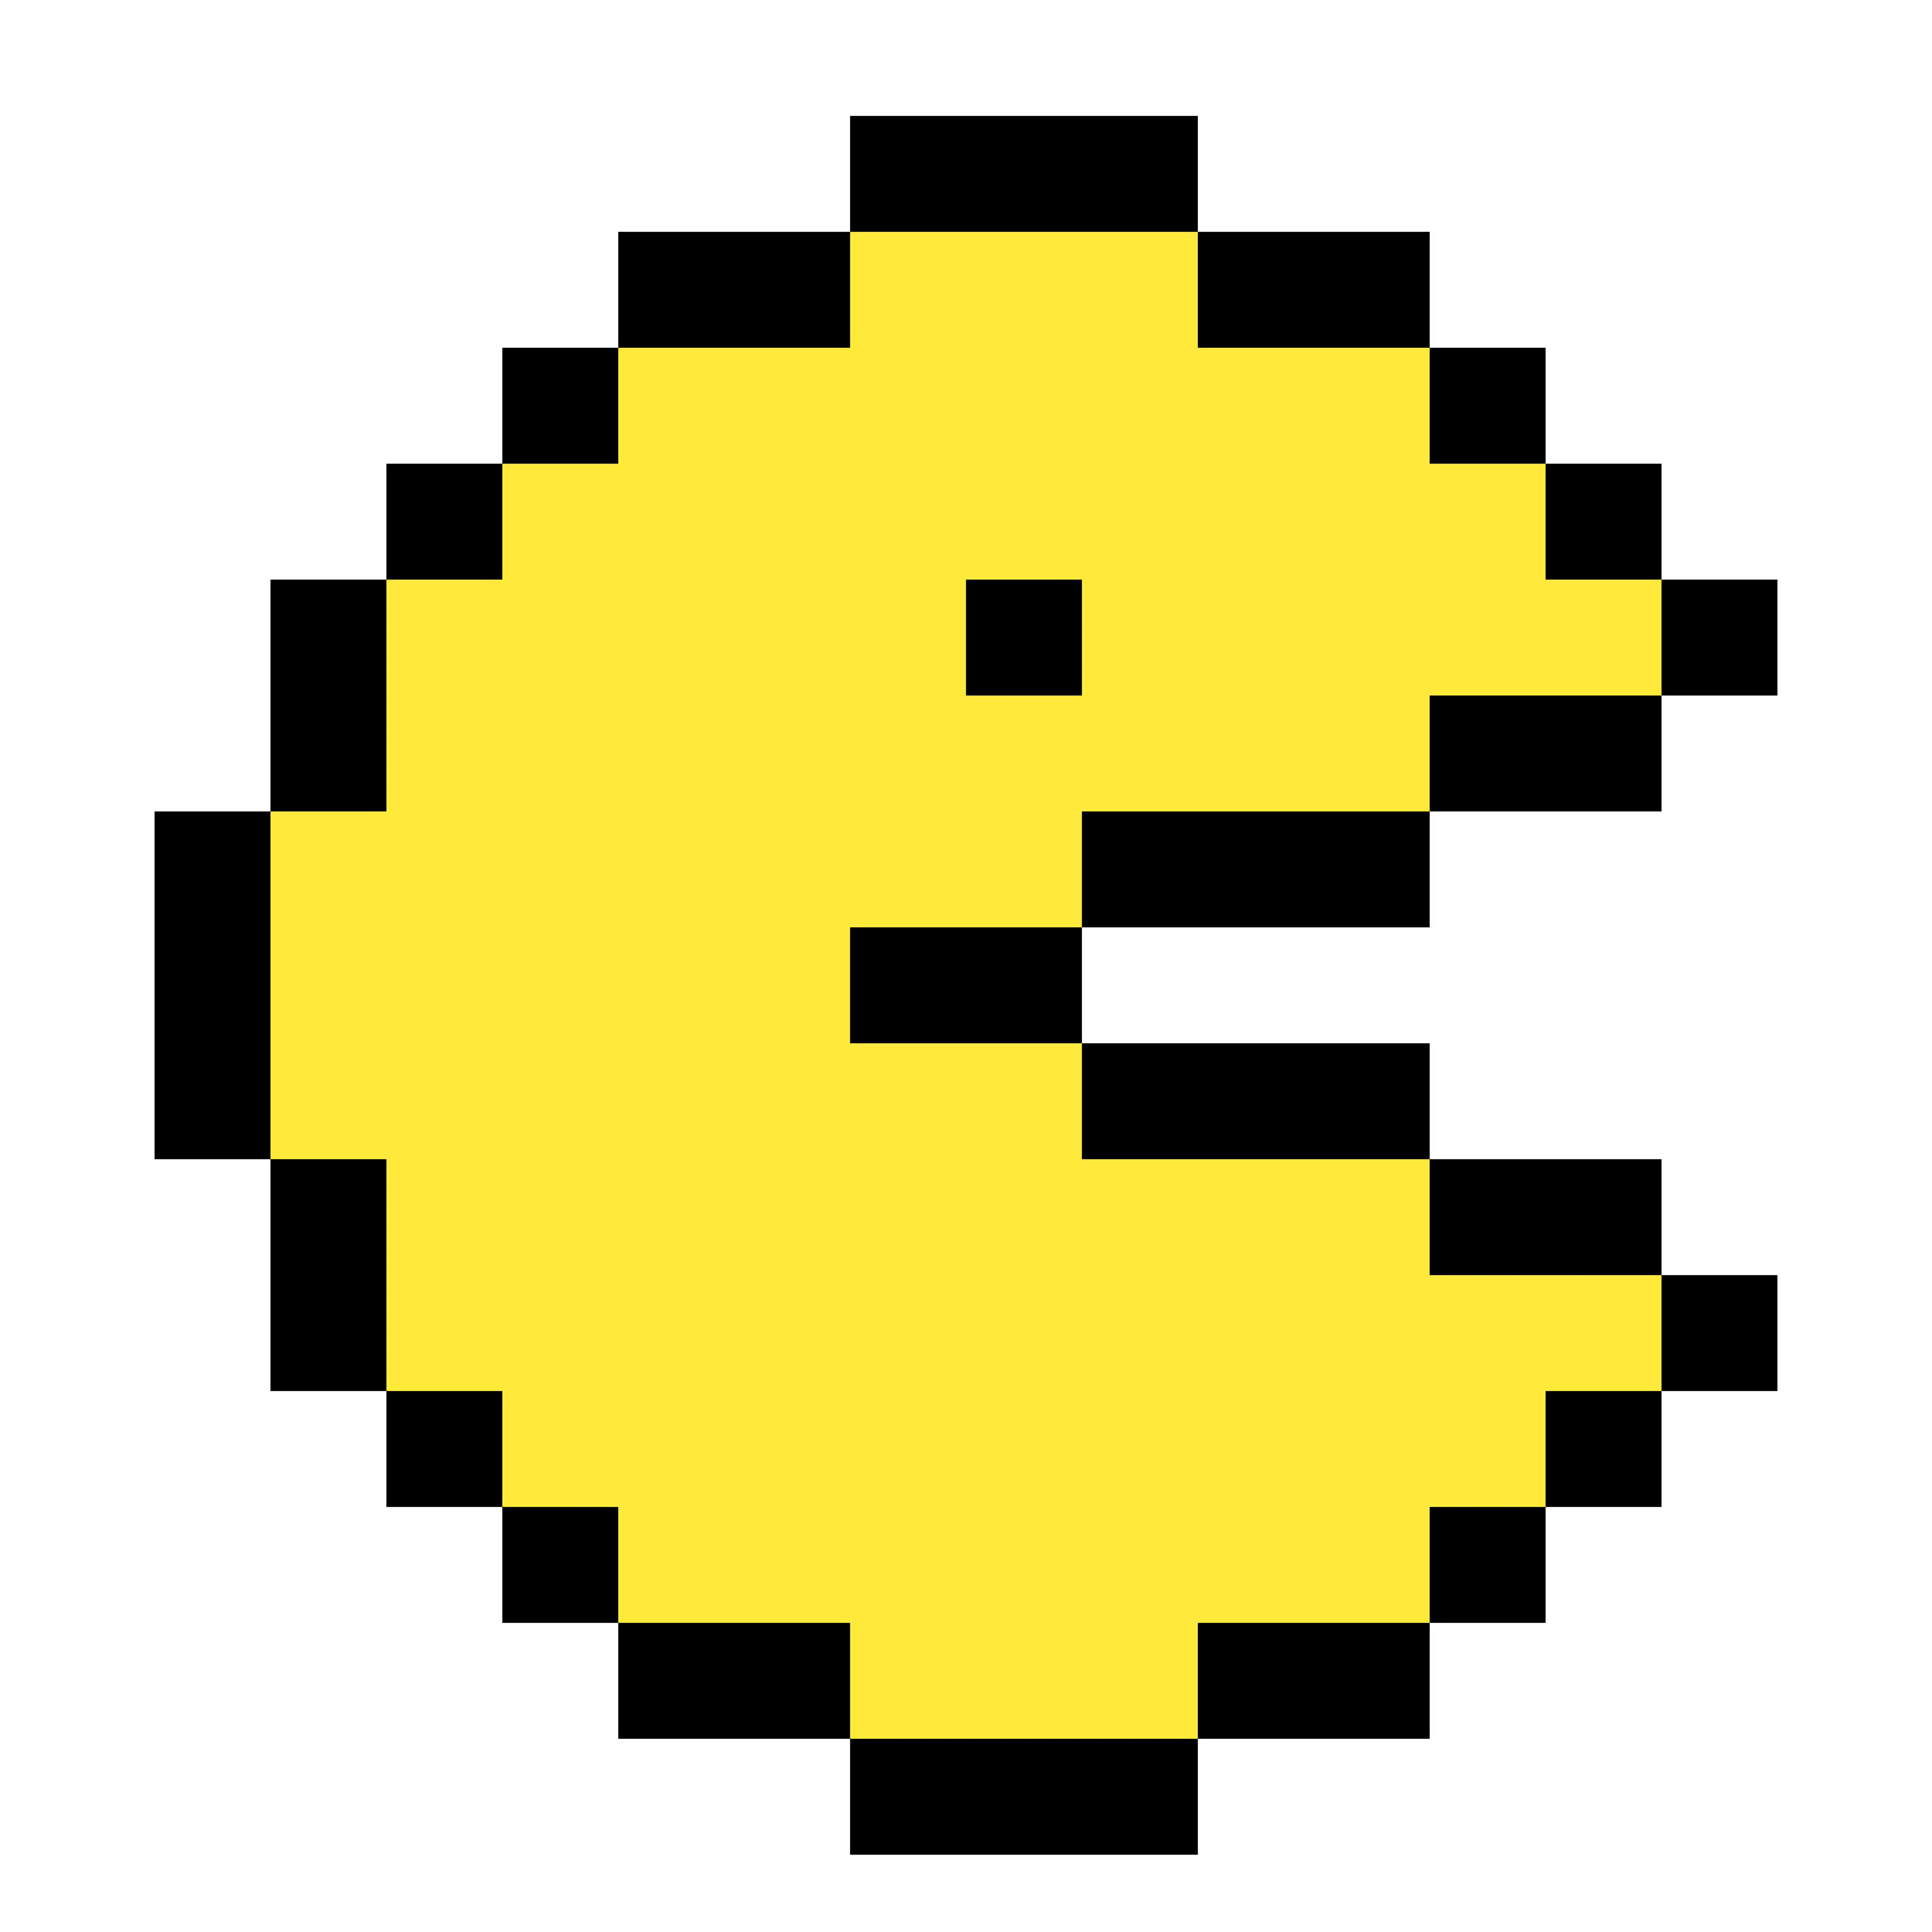 Jeux Pacman